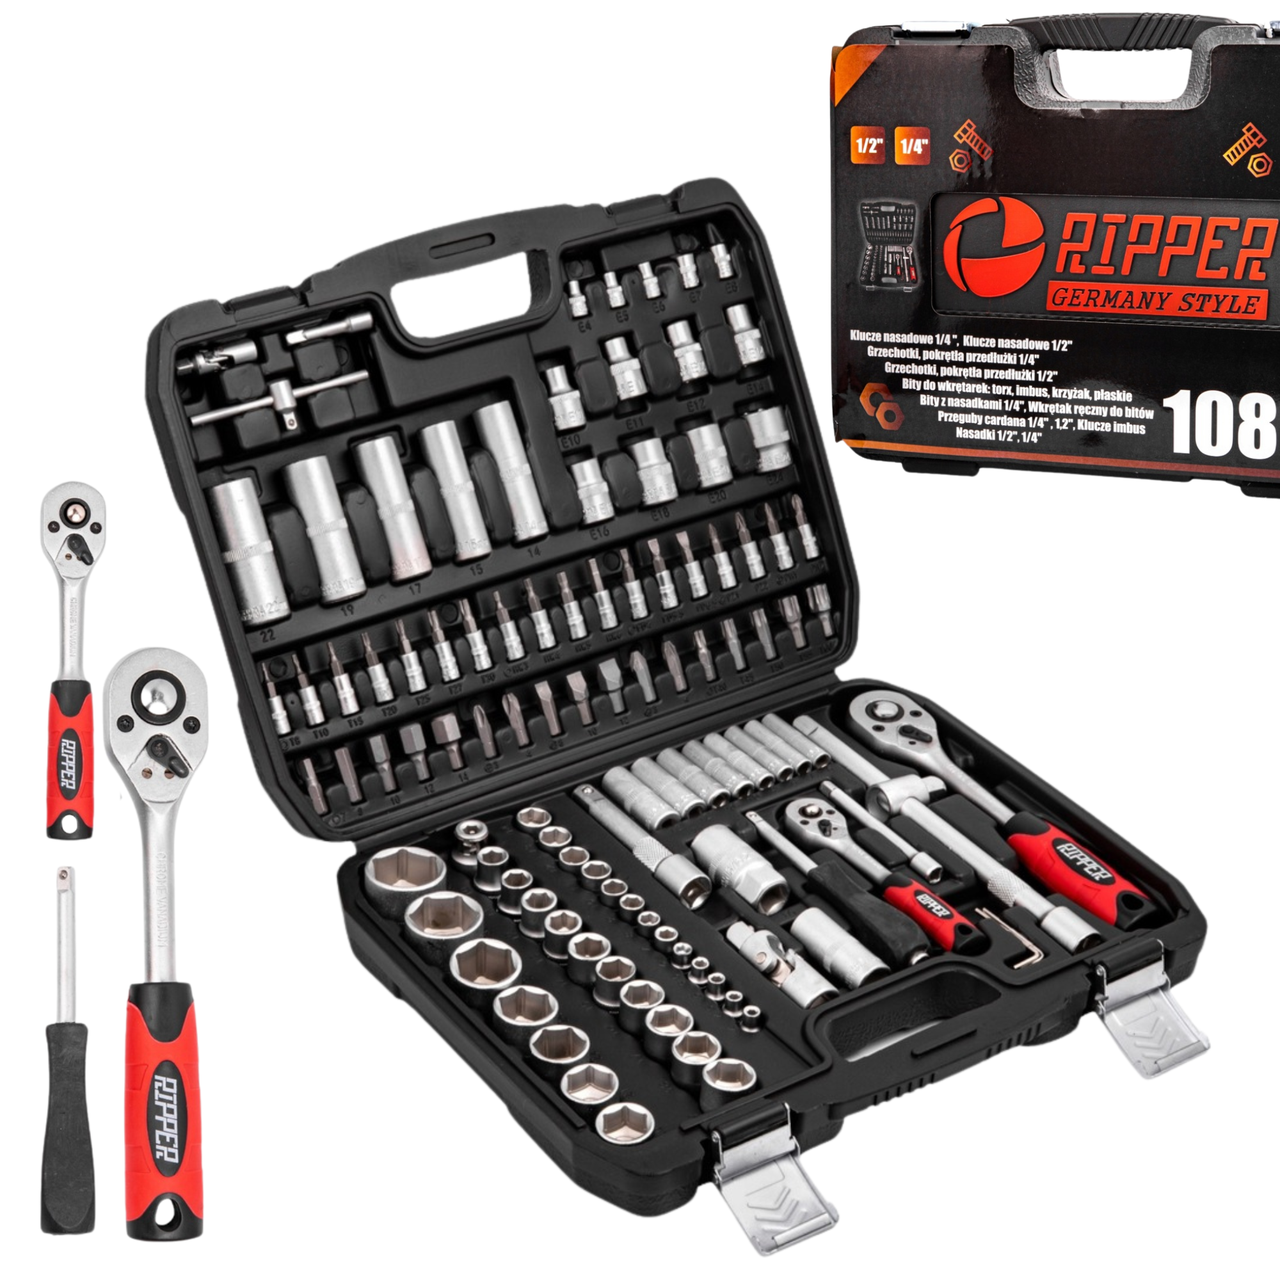 Професійний набір інструментів та торцевих головок ключів для авто та будинку Ripper M58220 108 ел